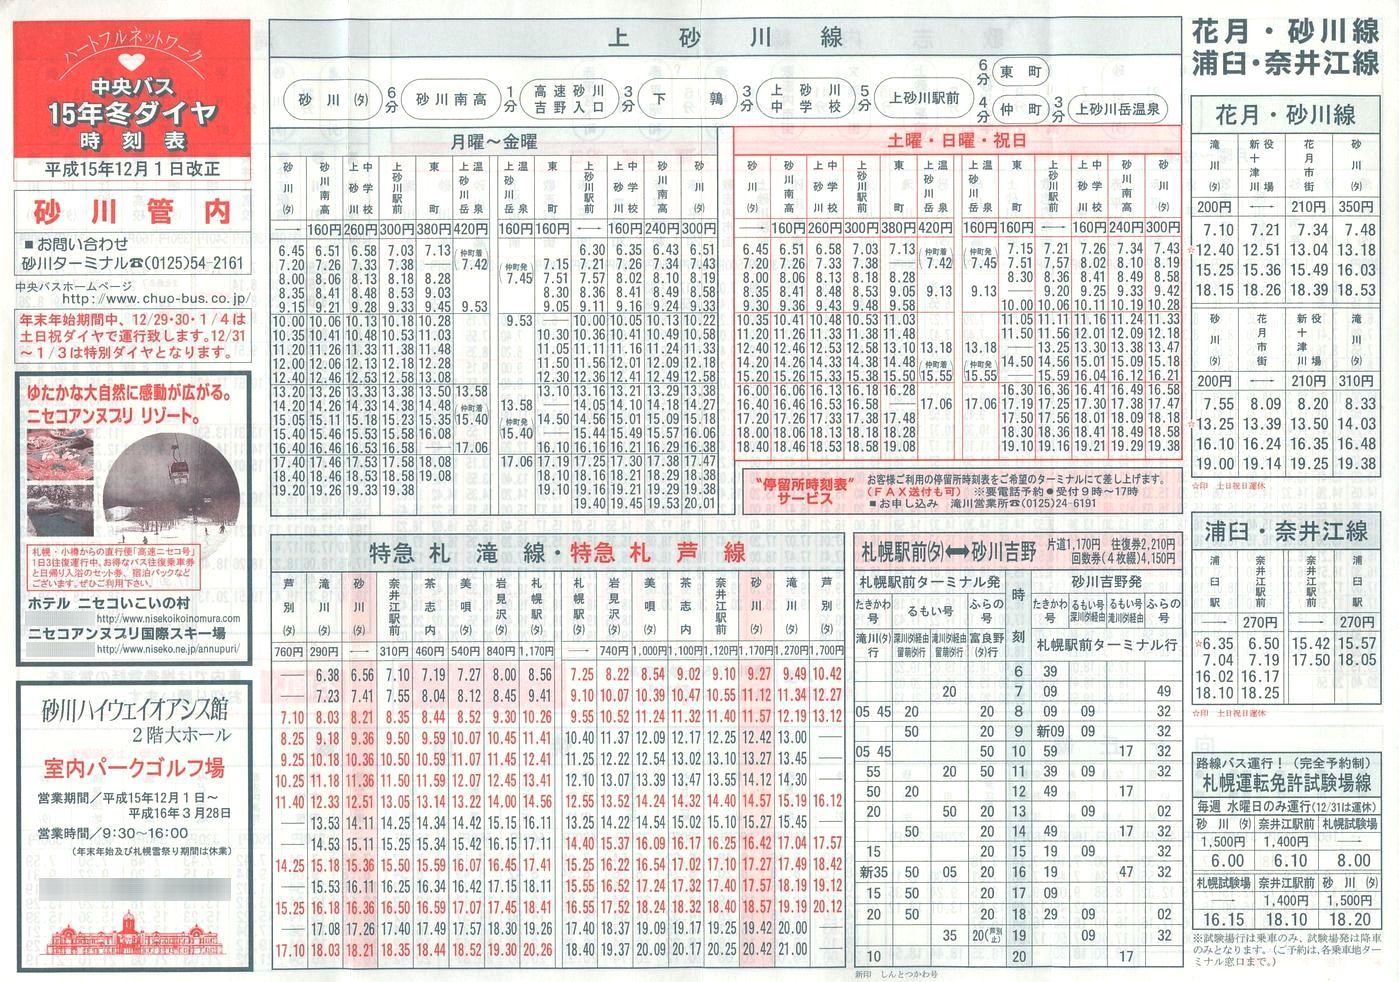 2003-12-01改正_北海道中央バス(空知)_砂川管内線時刻表表面